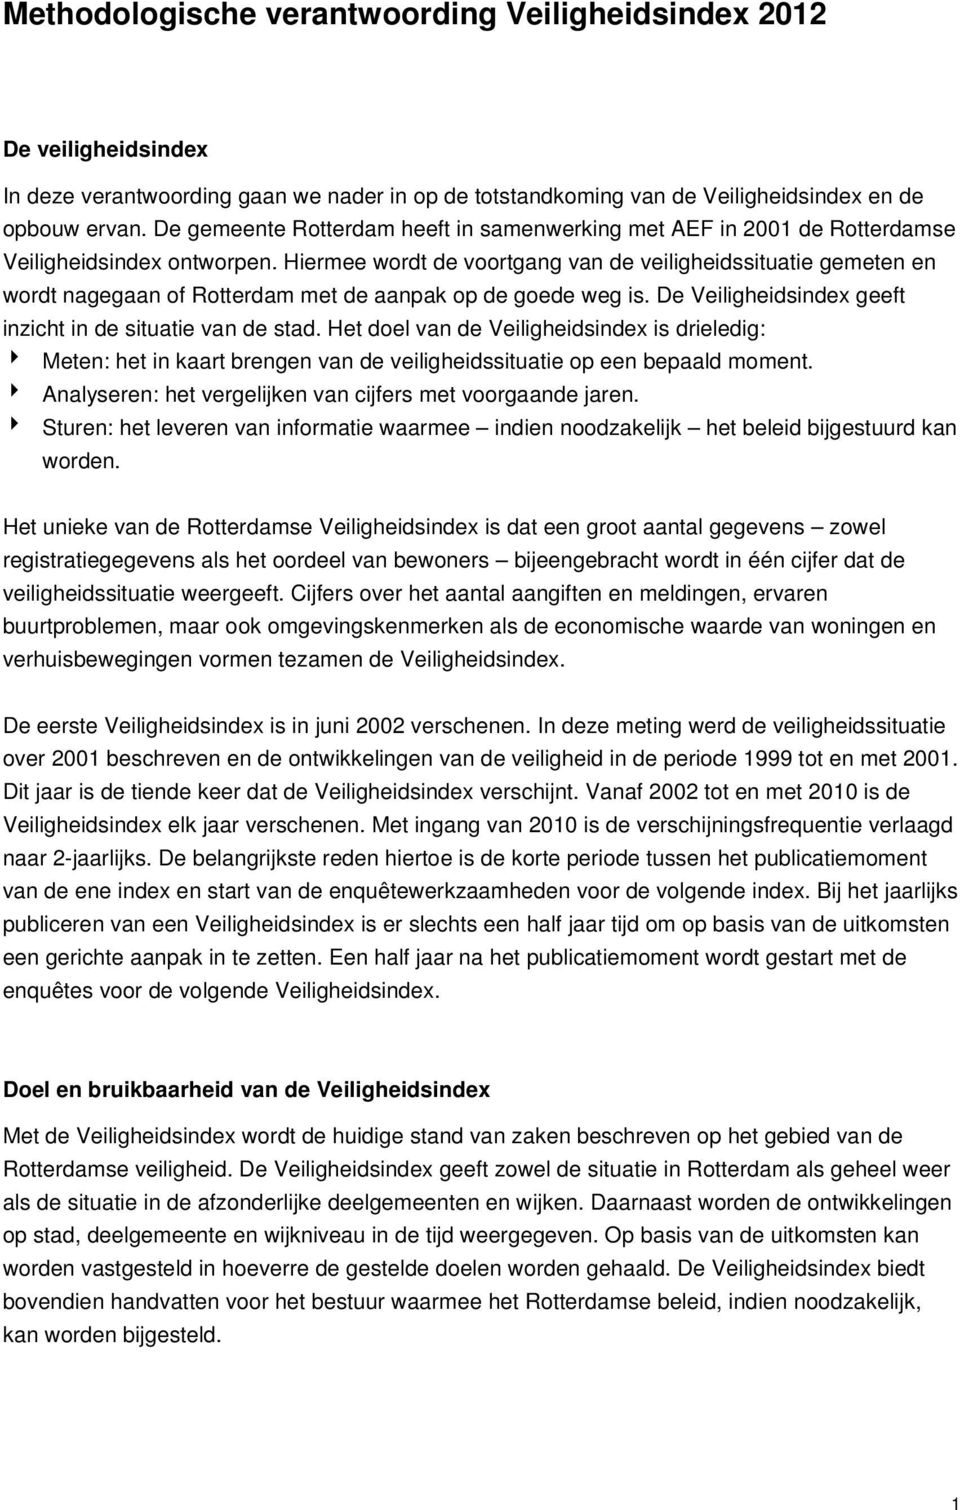 Hiermee wordt de voortgang van de veiligheidssituatie gemeten en wordt nagegaan of Rotterdam met de aanpak op de goede weg is. De Veiligheidsindex geeft inzicht in de situatie van de stad.